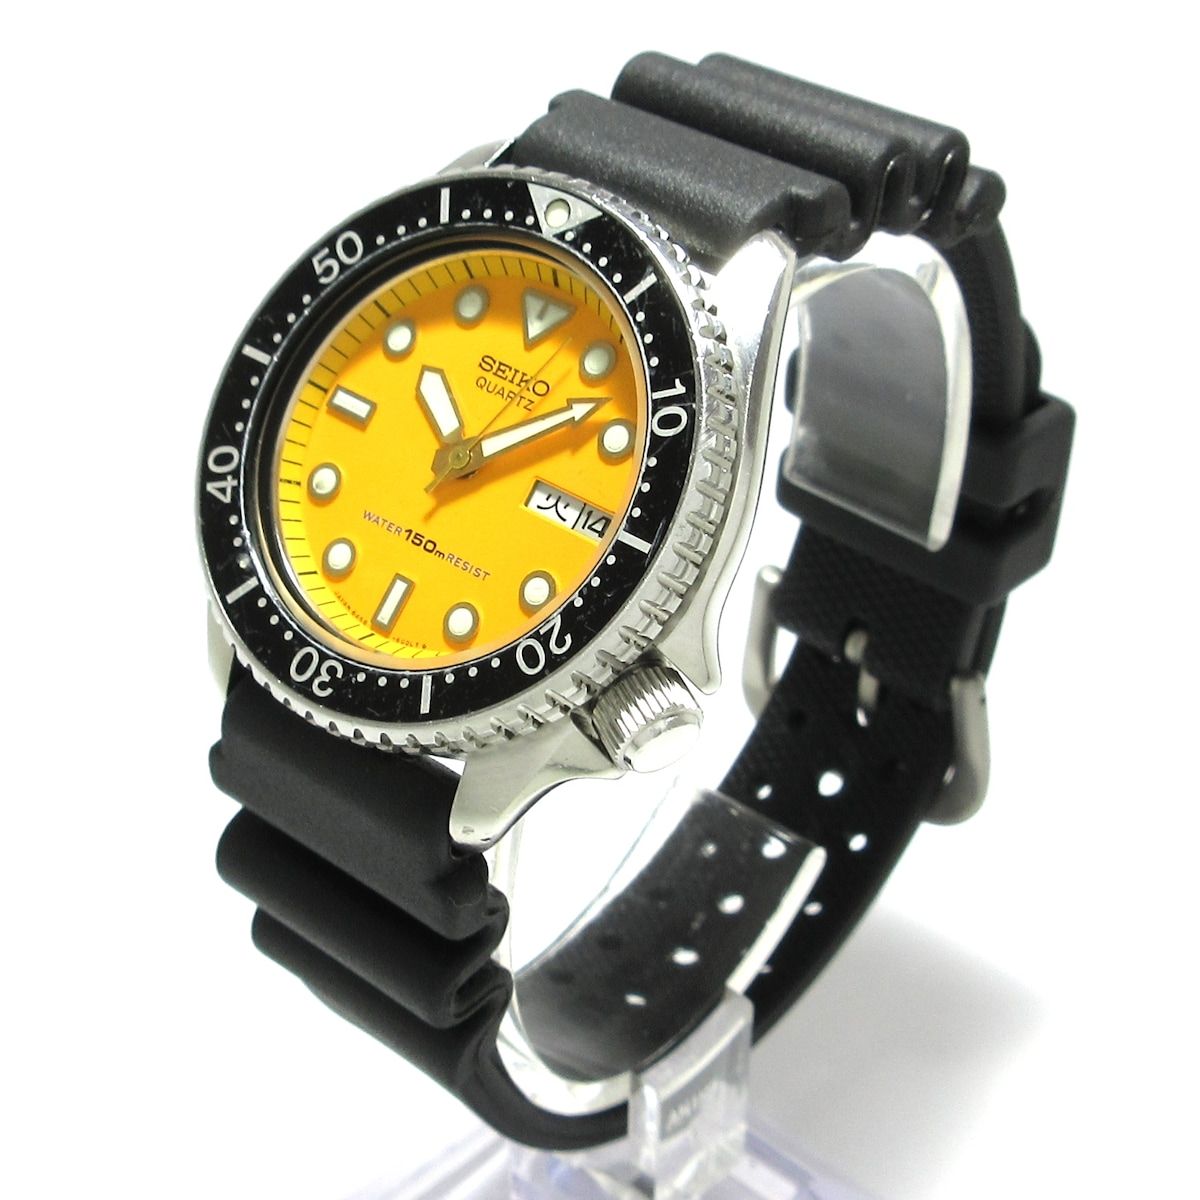 SEIKO(セイコー) 腕時計 6458-600A ボーイズ ラバーベルト